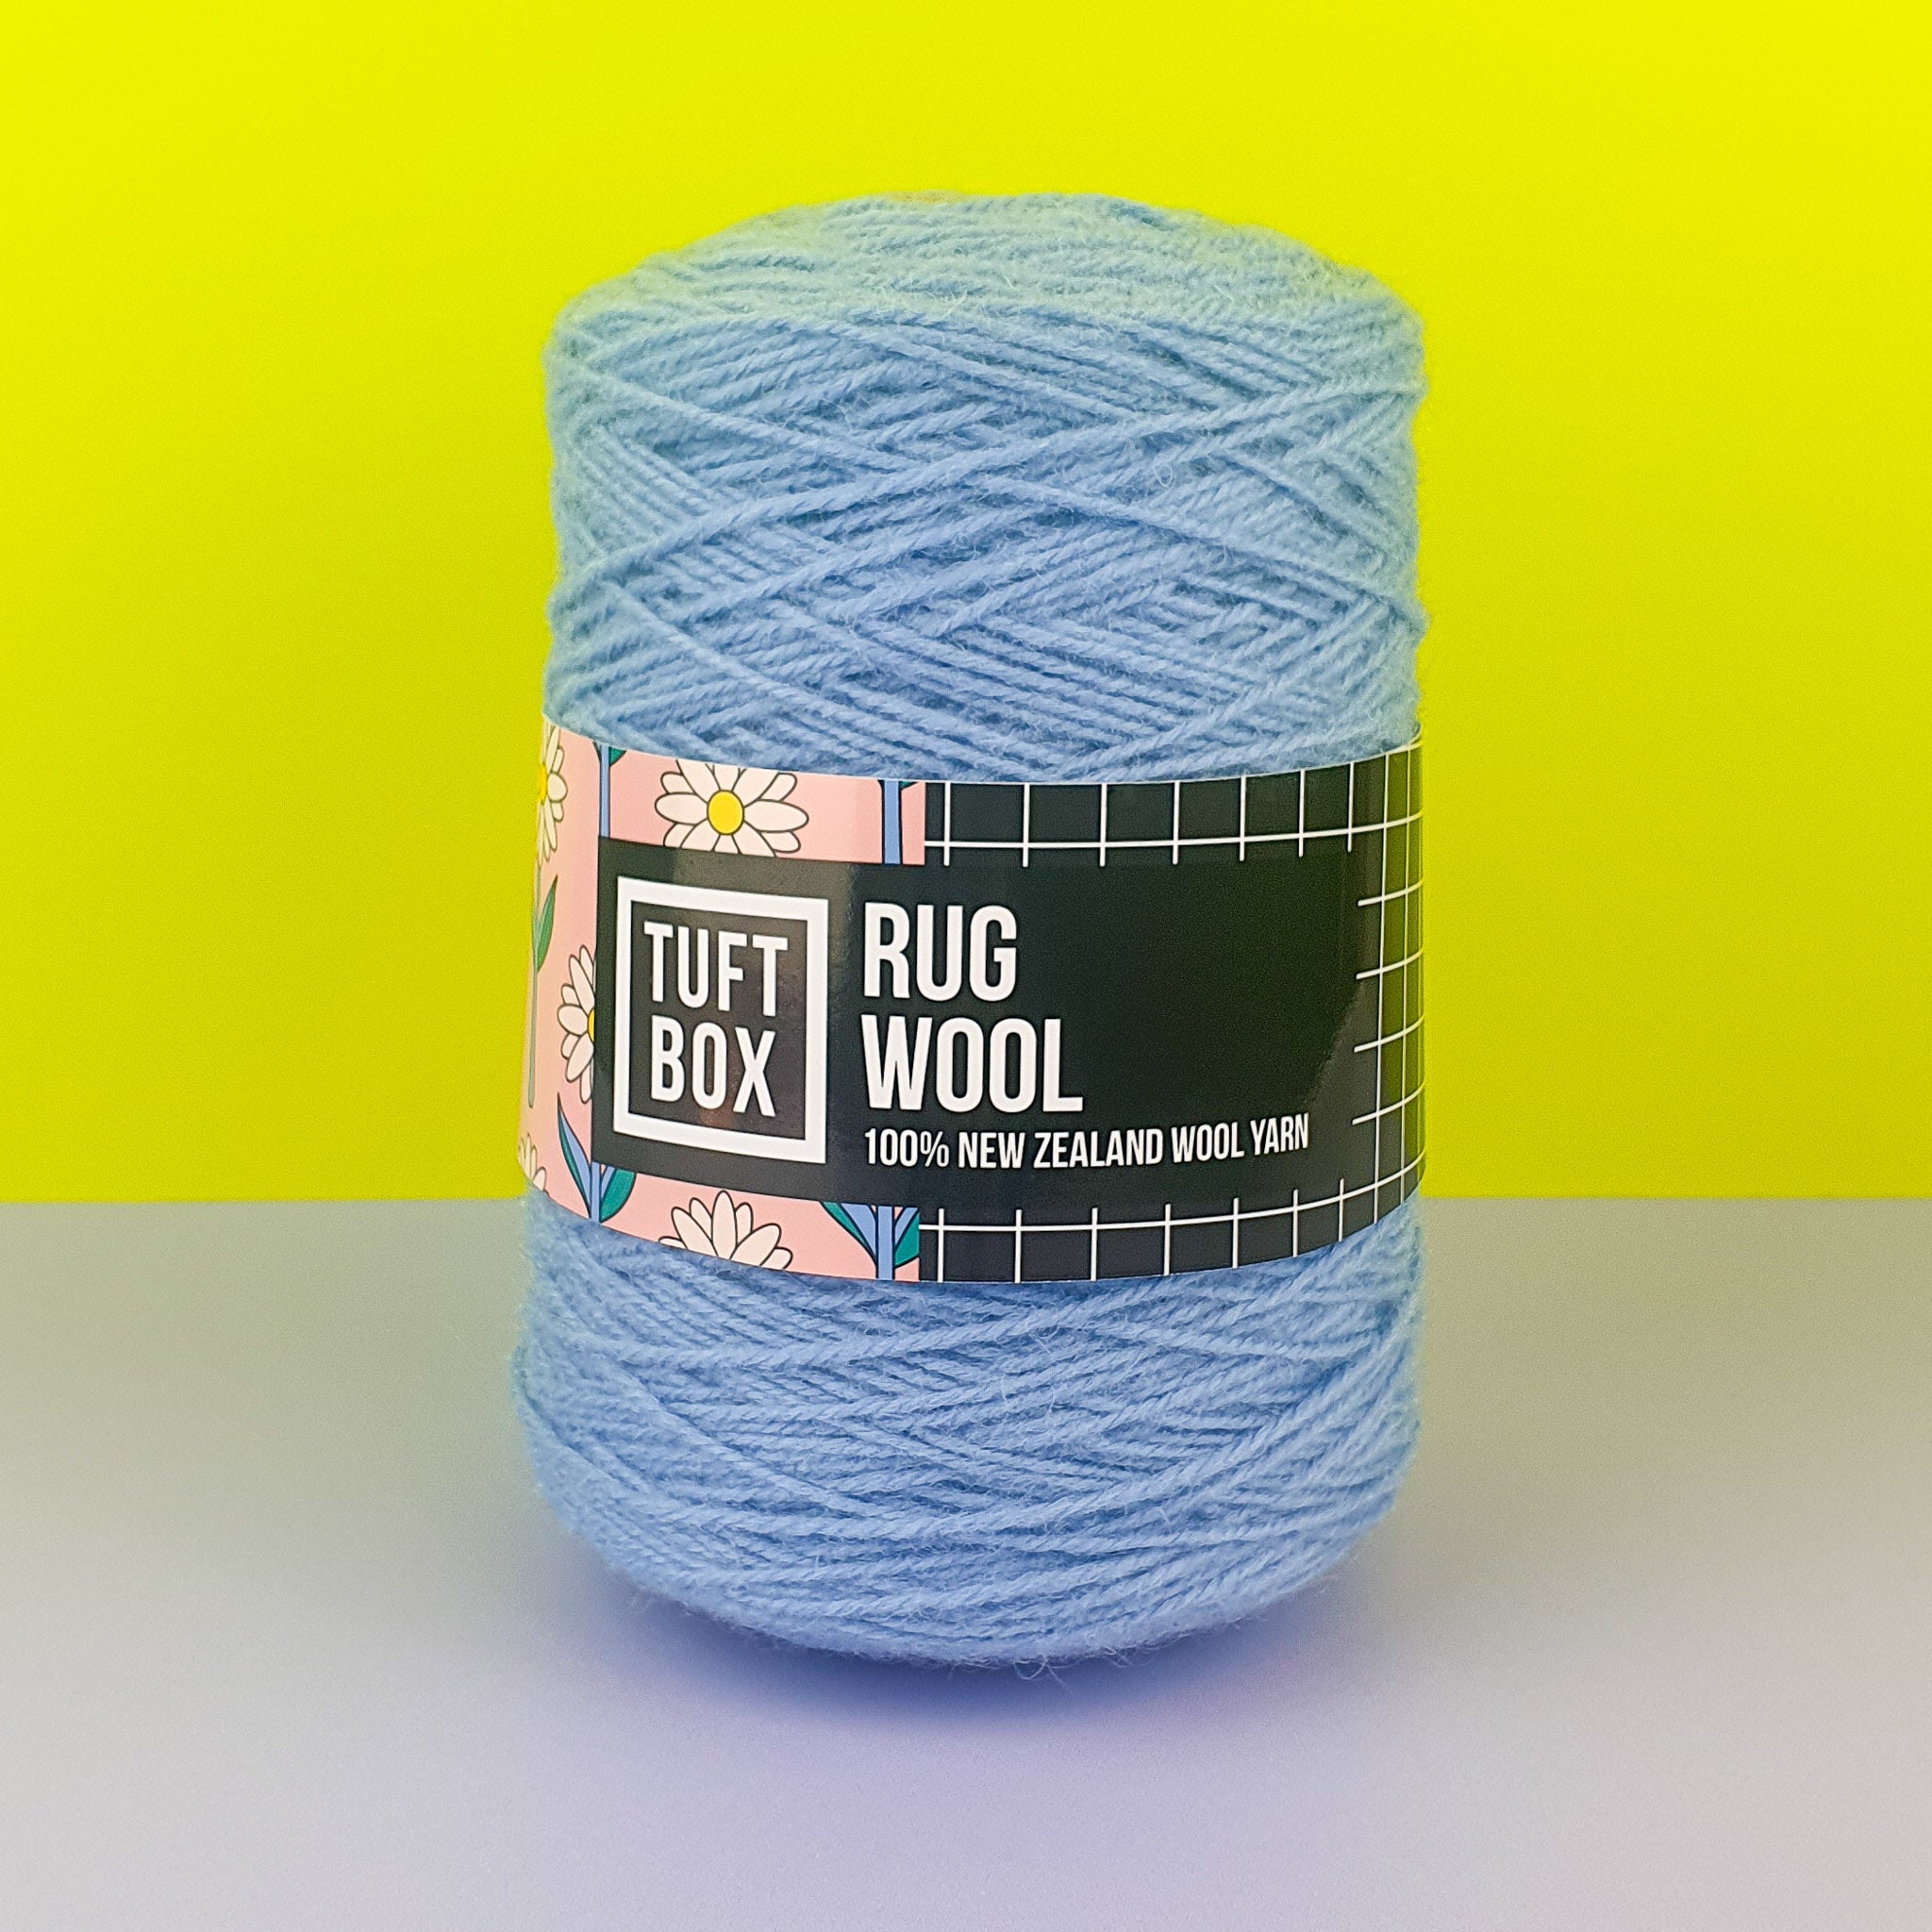 Tuftbox Rug Wool Cone Cornflower Blue